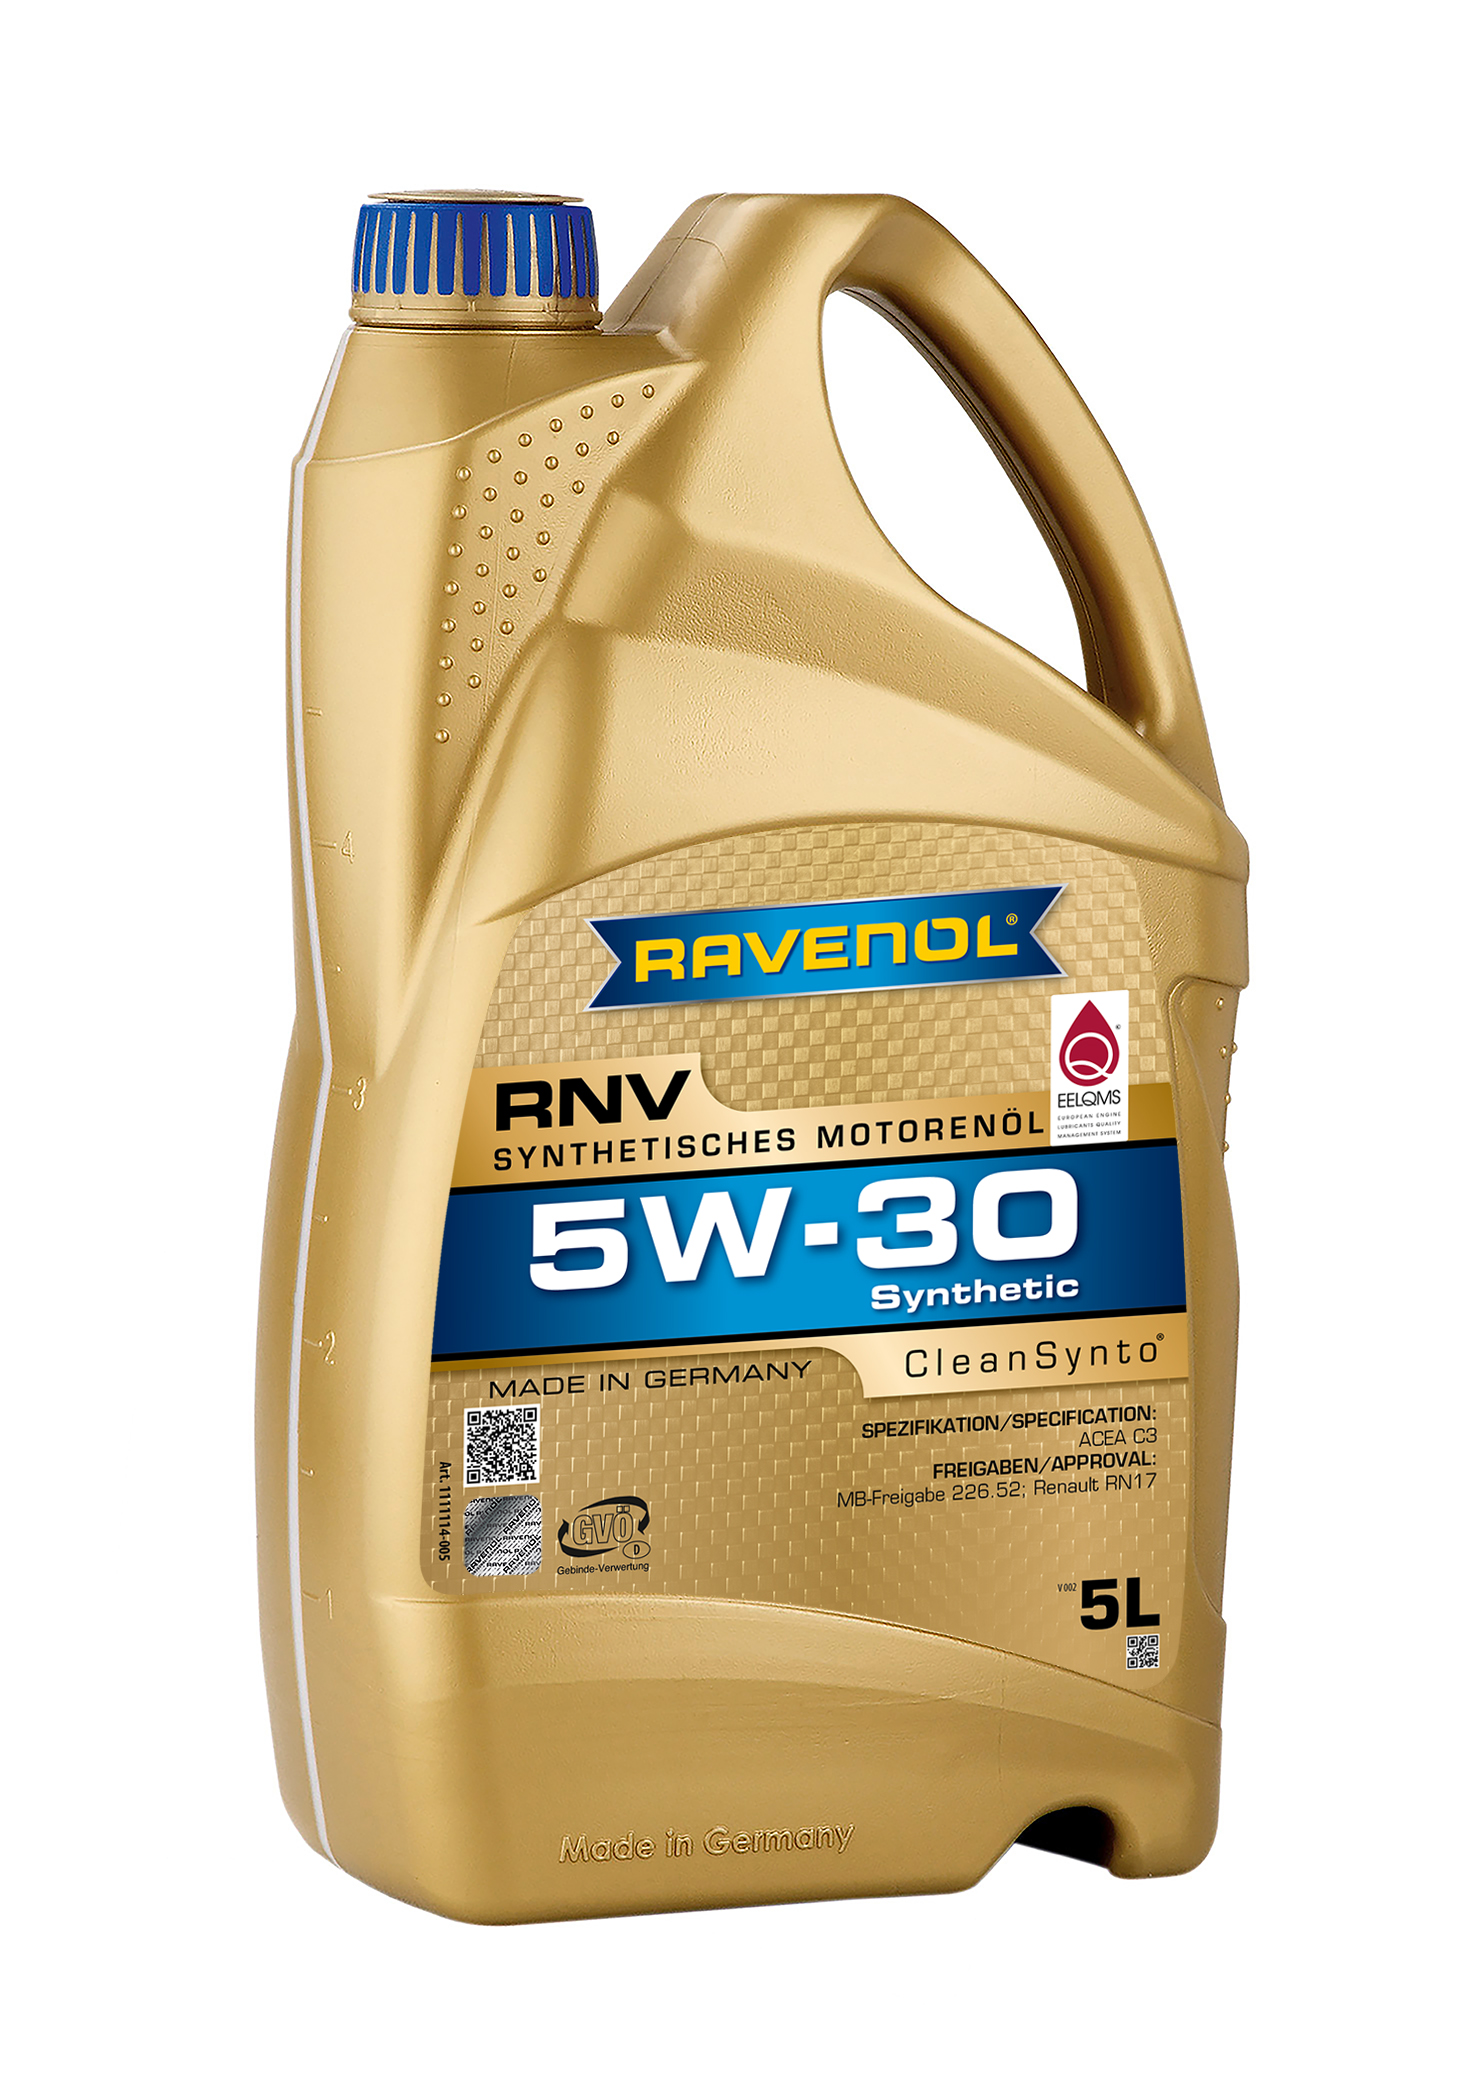 Ravenol RNV 5W-30